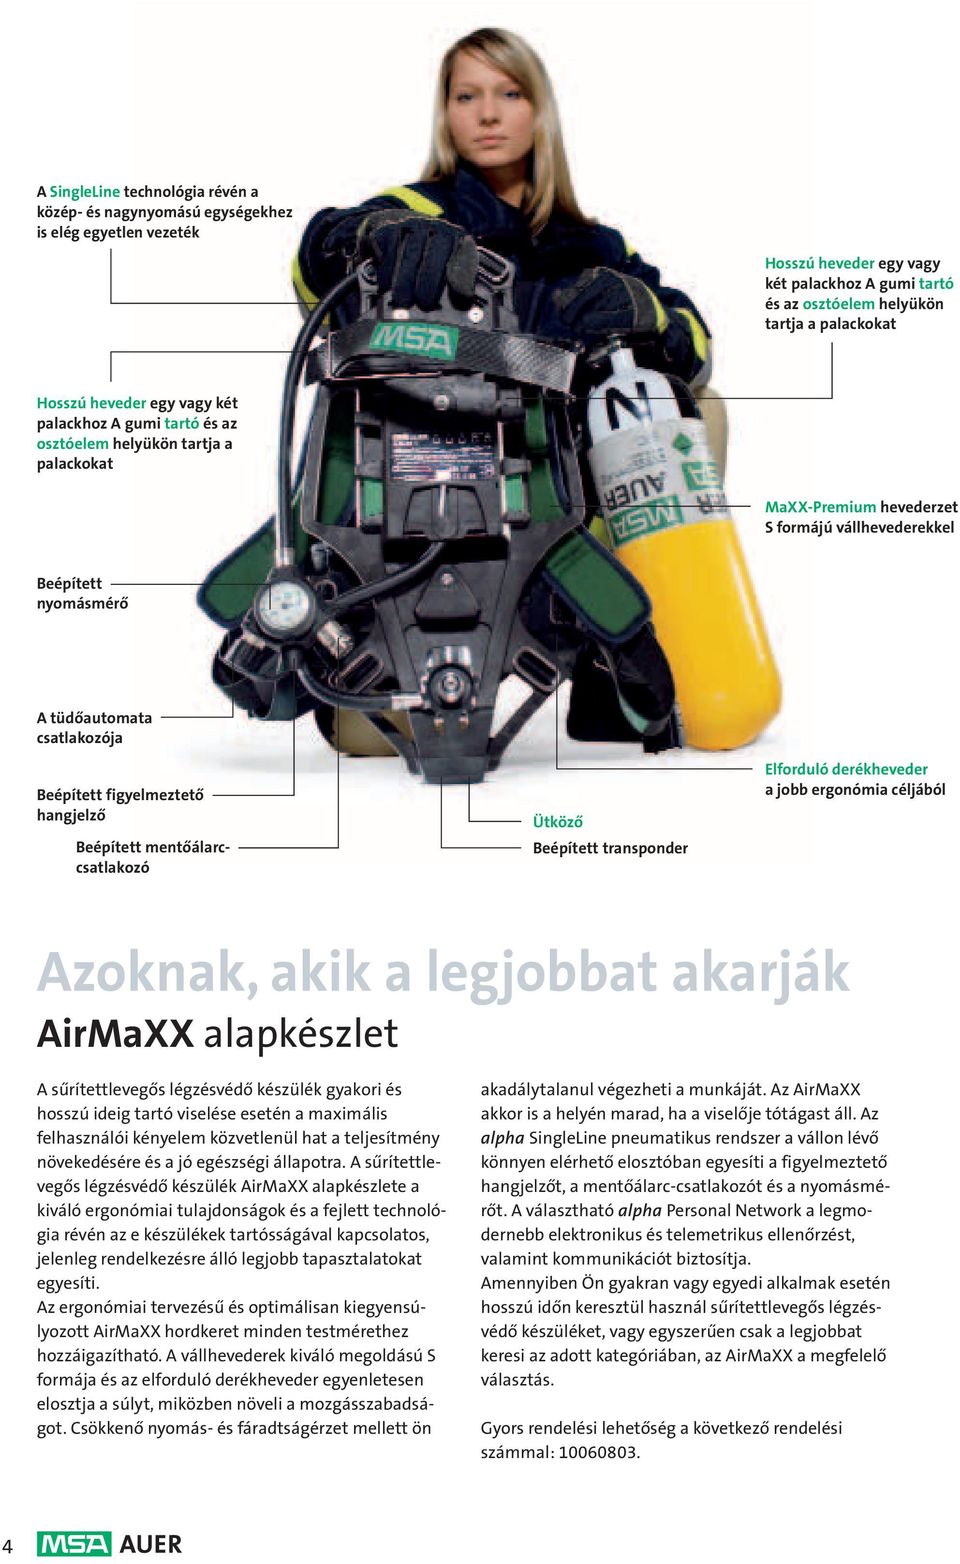 figyelmeztető hangjelző Beépített mentőálarccsatlakozó Ütköző Beépített transponder Elforduló derékheveder a jobb ergonómia céljából Azoknak, akik a legjobbat akarják AirMaXX alapkészlet A